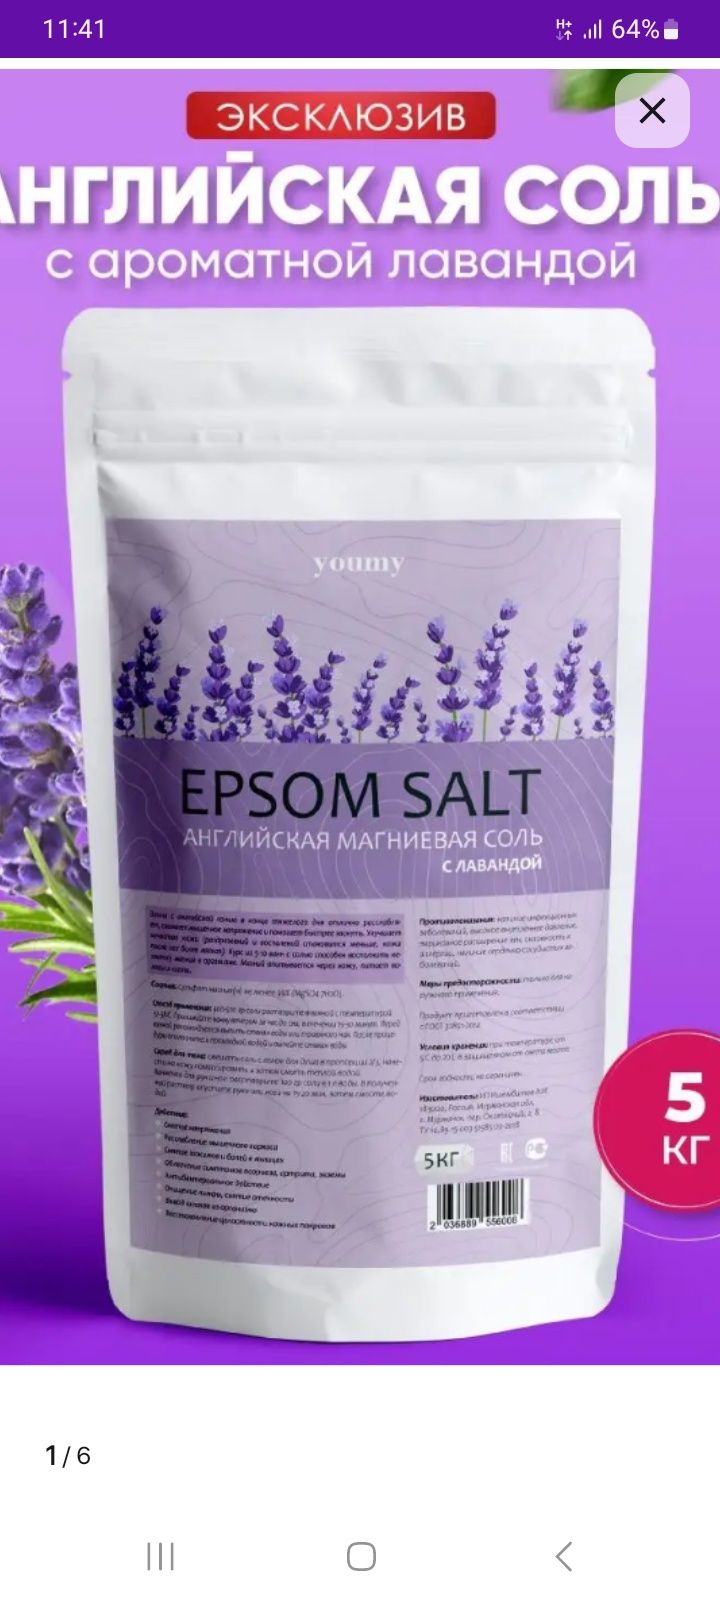 Английская соль EPSOM. 8500 тг.